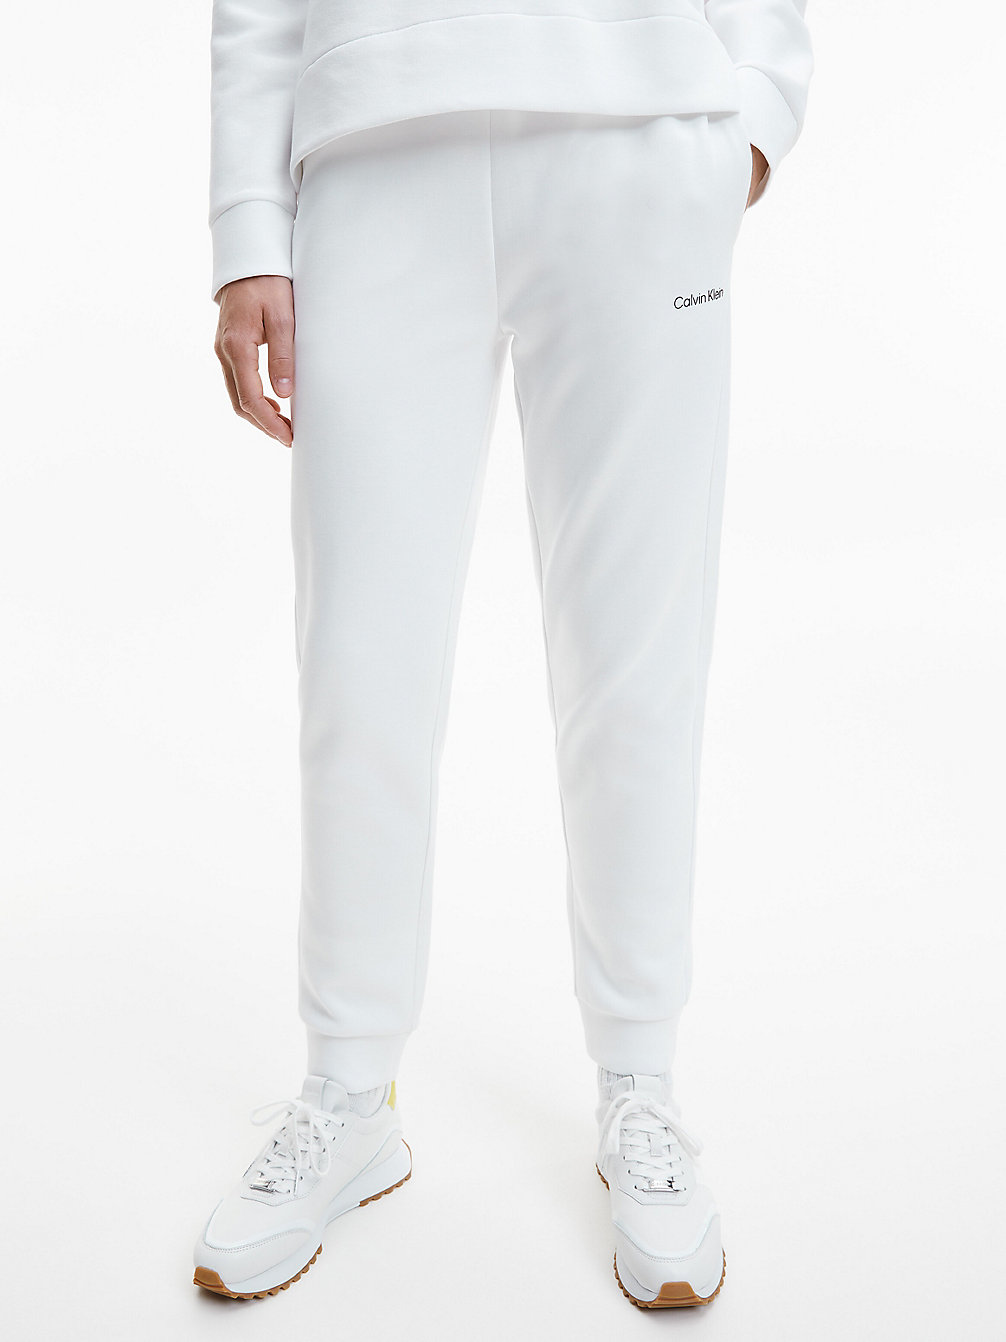 BRIGHT WHITE Pantalon De Jogging Slim En Polyester Recyclé undefined femmes Calvin Klein